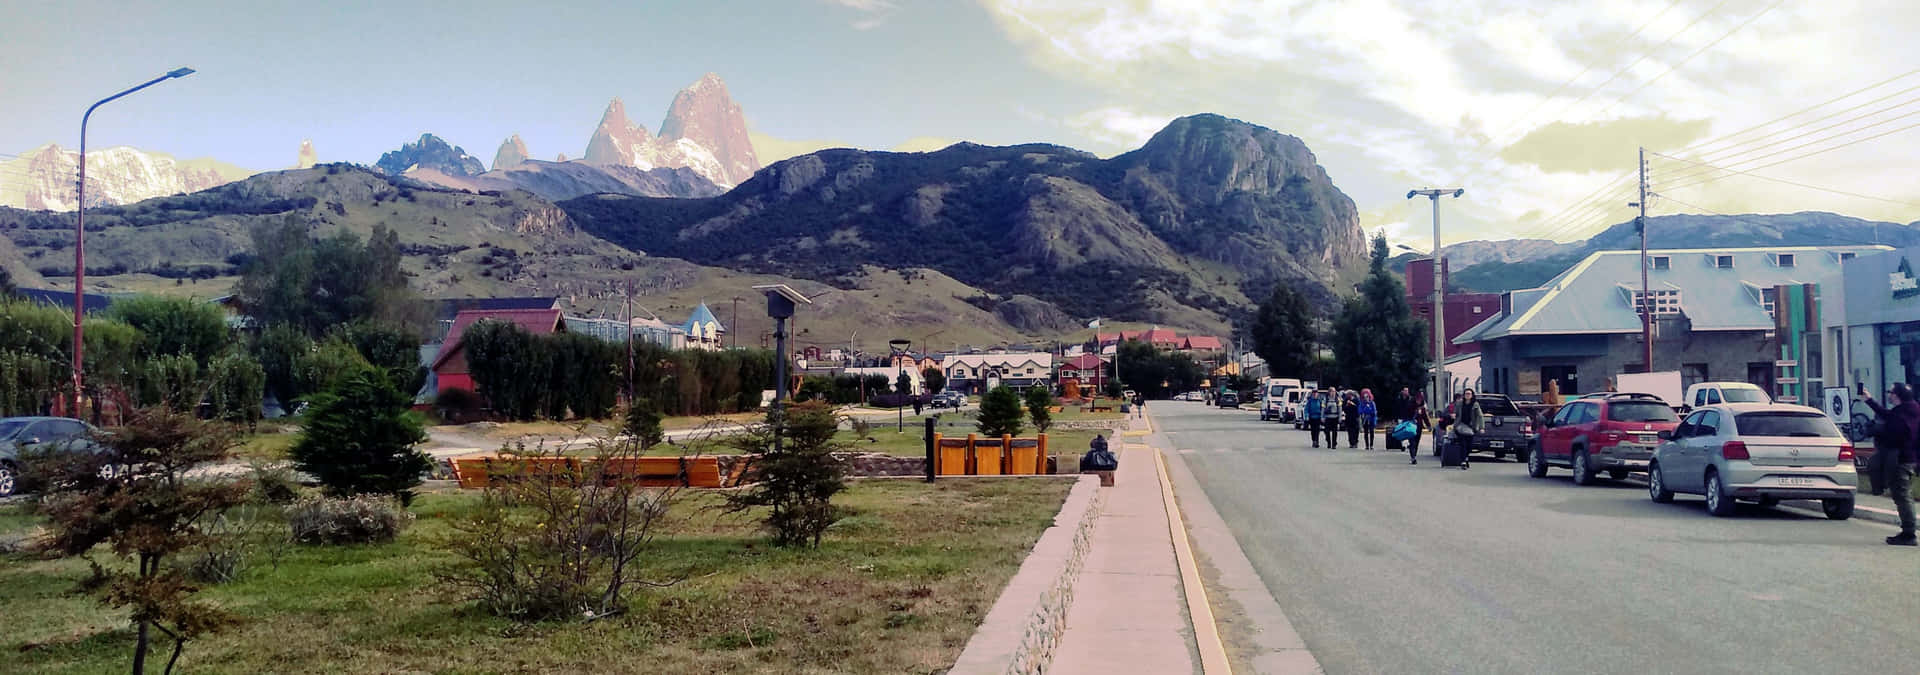 Imagendel Pequeño Pueblo De Montaña El Chaltén Fondo de pantalla